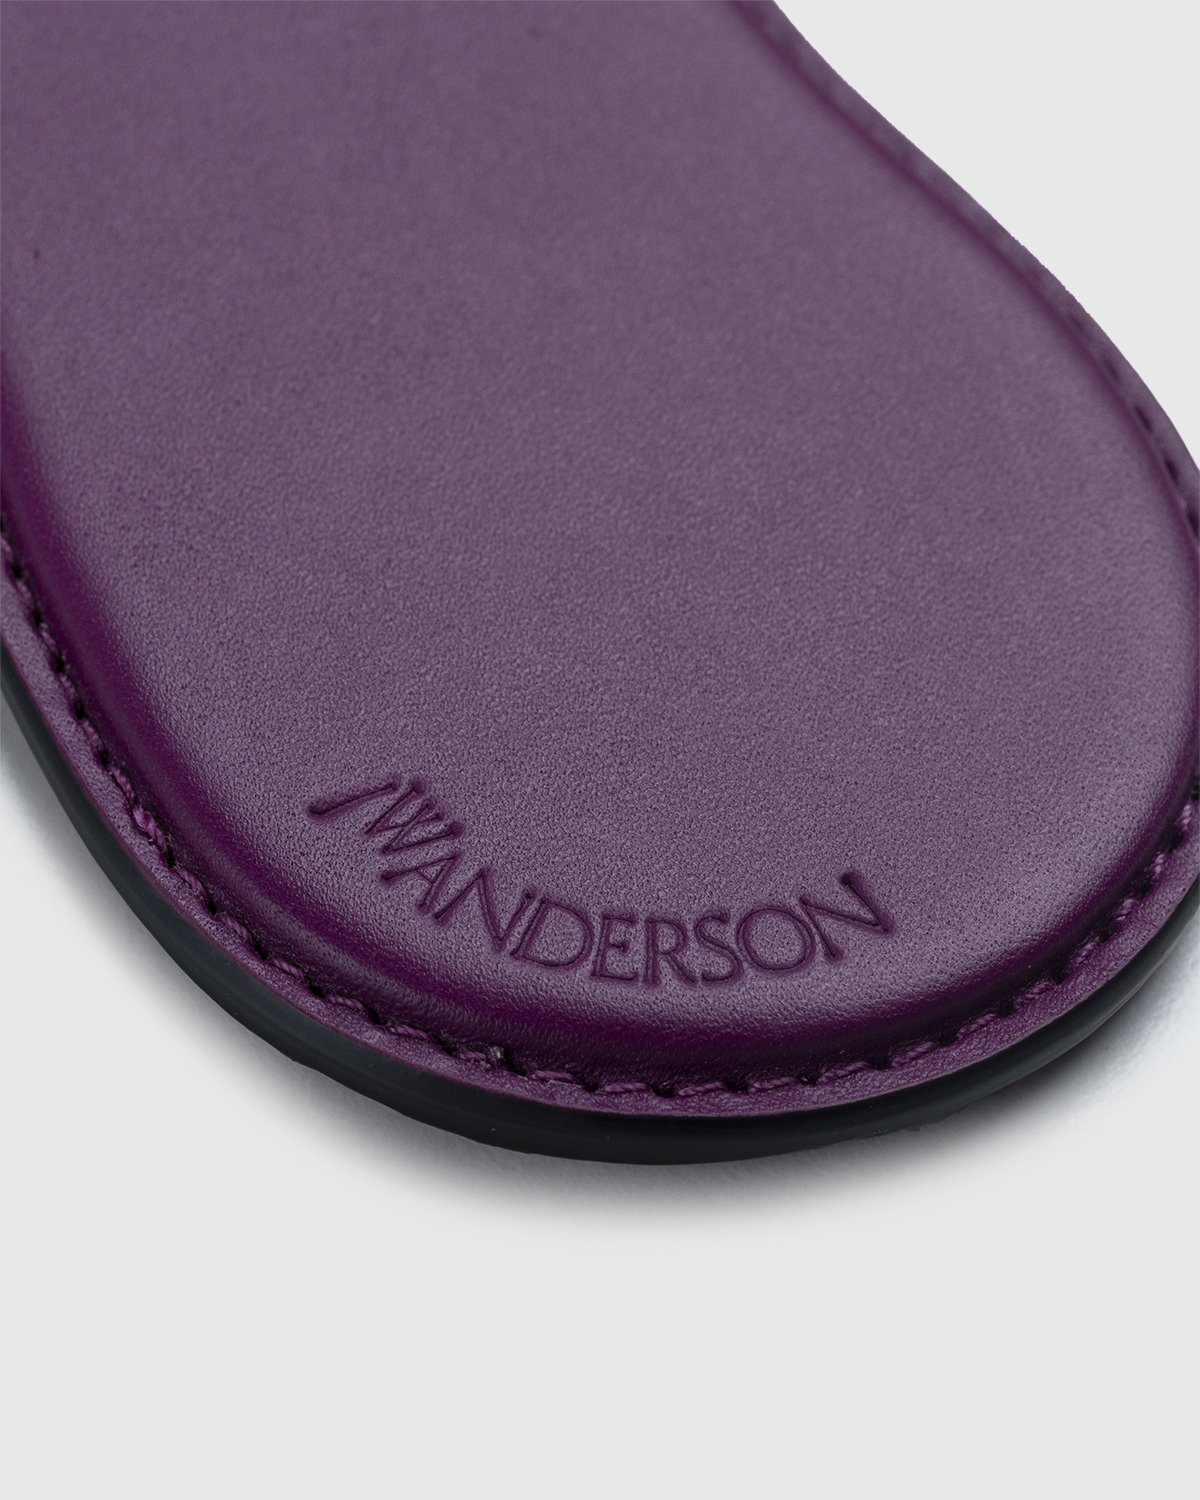 J.W. Anderson - Aubergine Keyring Purple - Accessories - Purple - Image 3